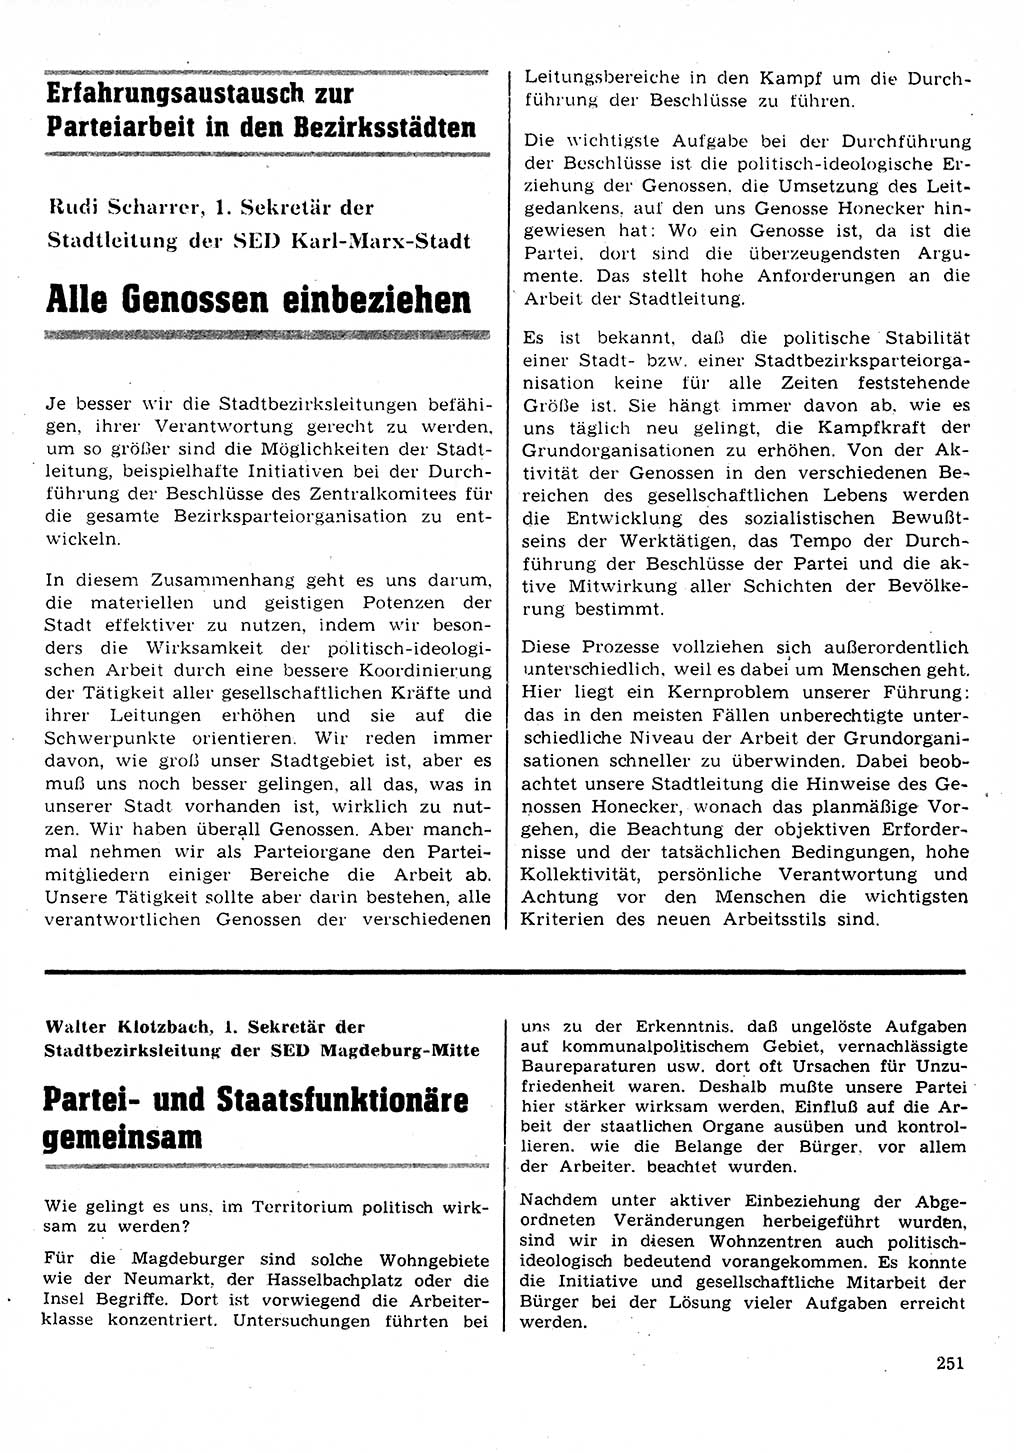 Neuer Weg (NW), Organ des Zentralkomitees (ZK) der SED (Sozialistische Einheitspartei Deutschlands) für Fragen des Parteilebens, 28. Jahrgang [Deutsche Demokratische Republik (DDR)] 1973, Seite 251 (NW ZK SED DDR 1973, S. 251)